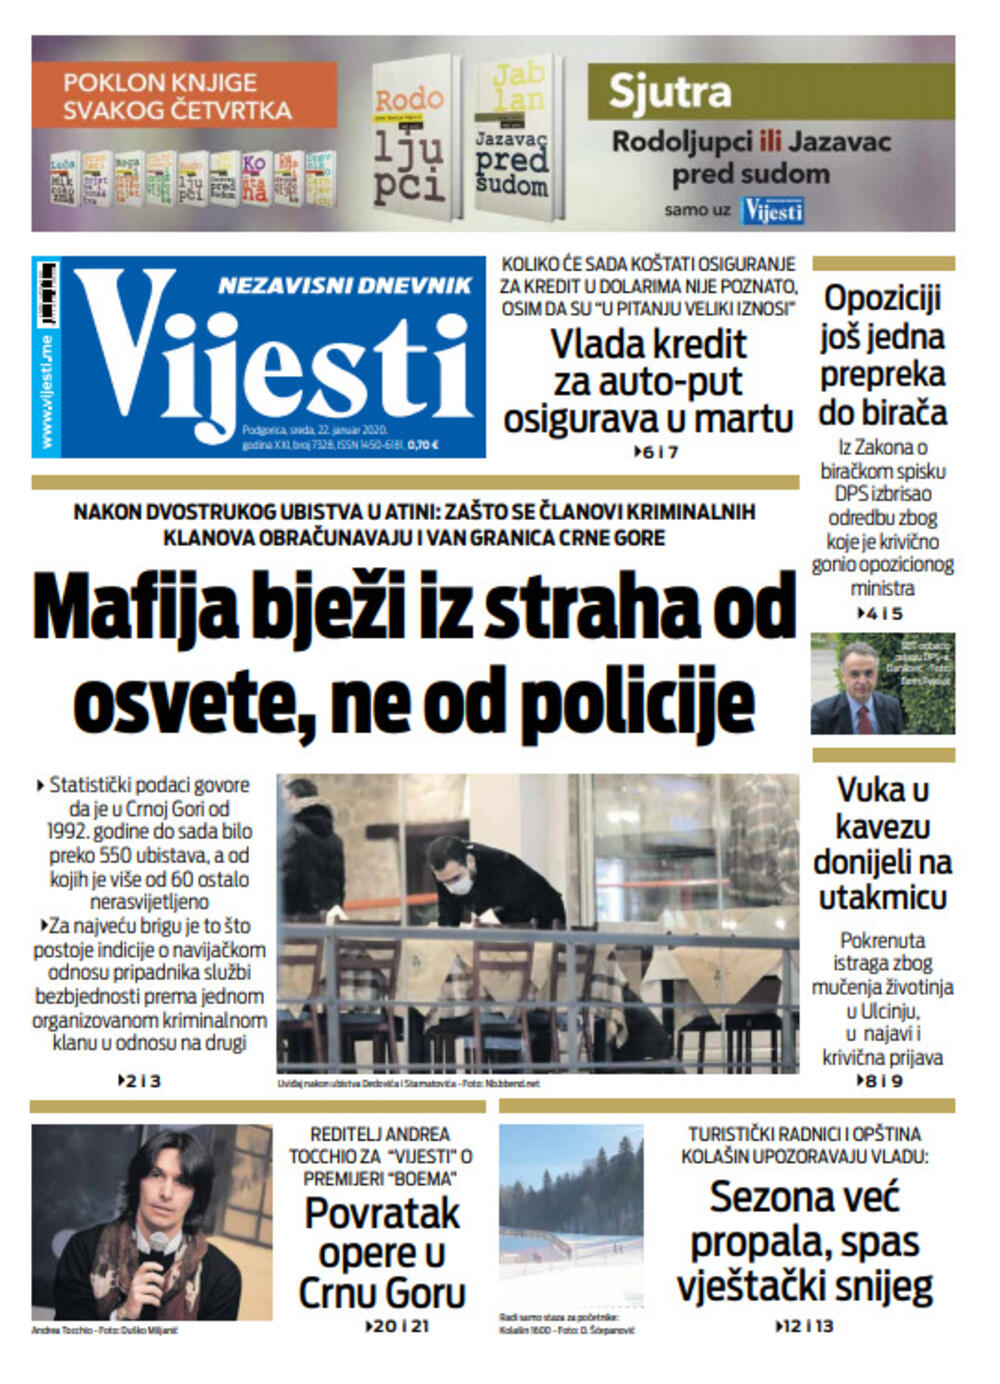 Naslovna strana "Vijesti" za 22. januar 2020., Foto: Vijesti